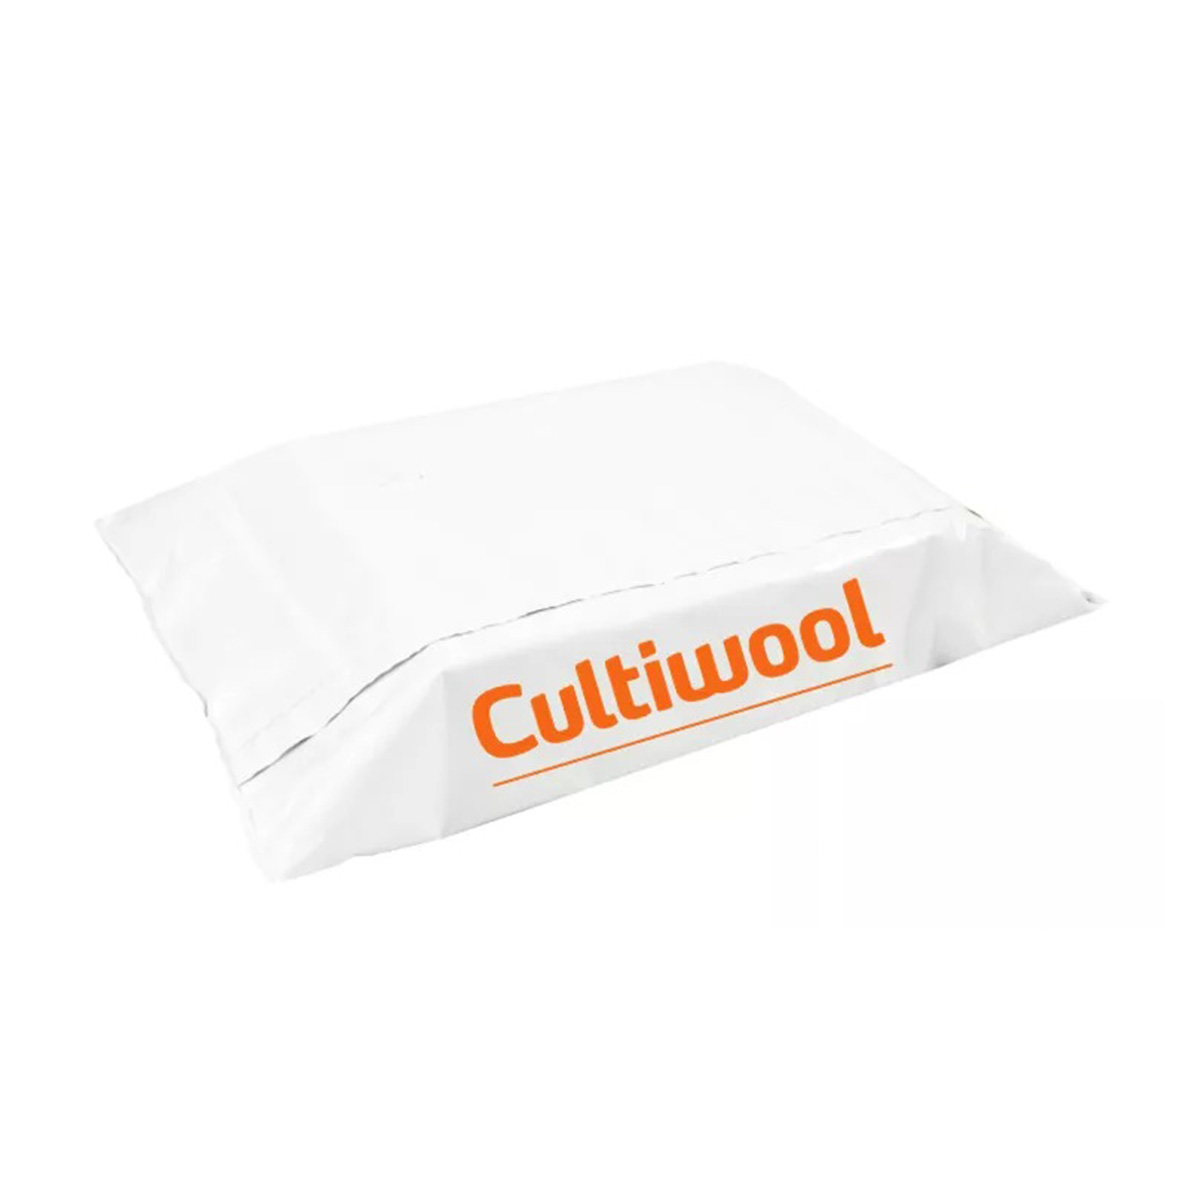 Cultiwool Mini-slab